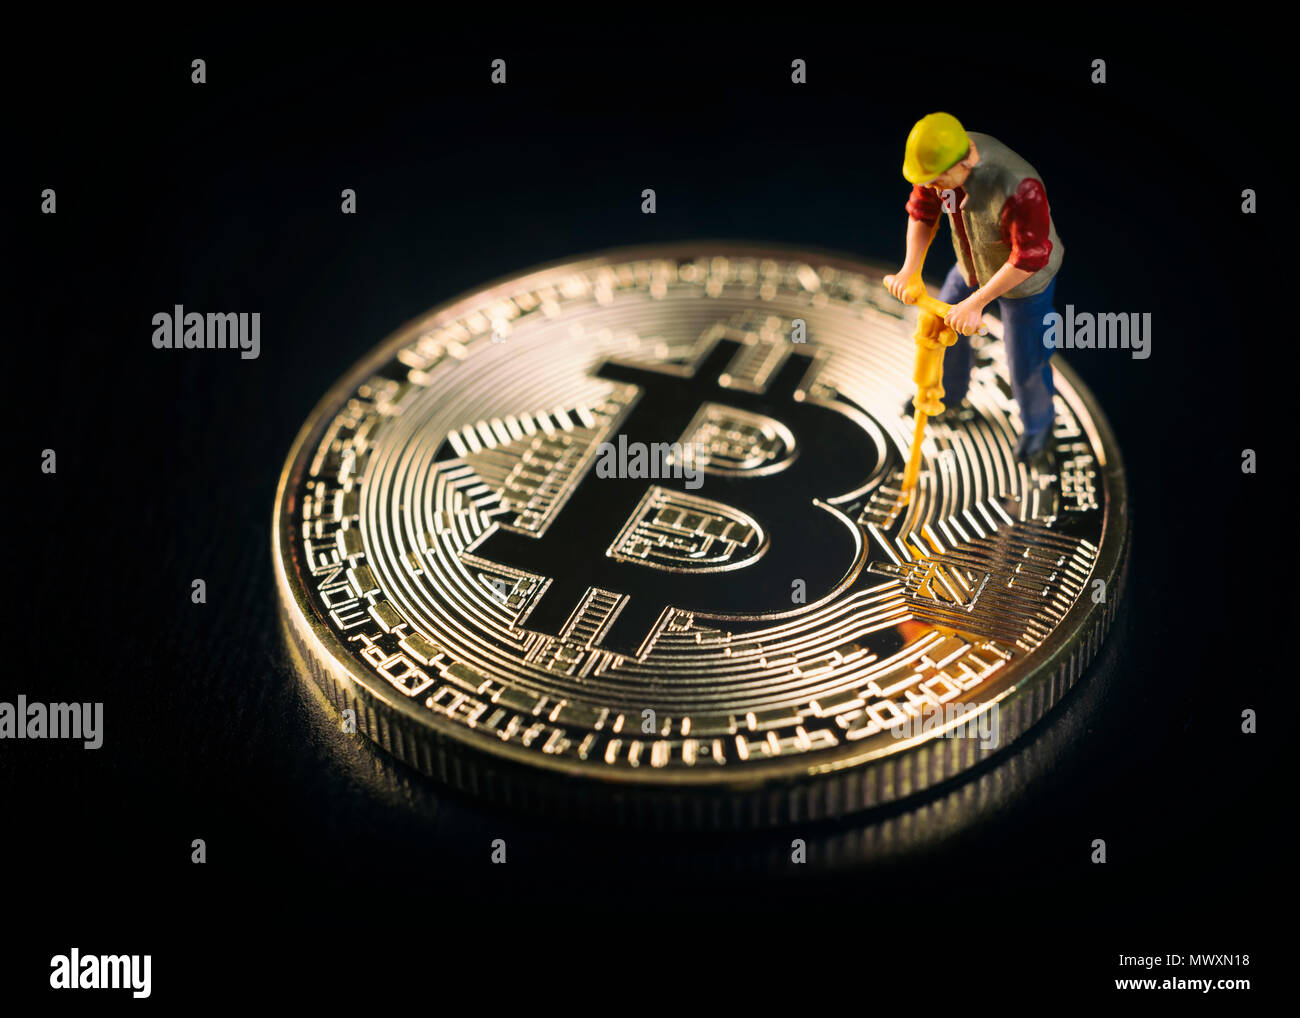 Trabajador en miniatura la minería Bitcoin sobre una superficie negra Foto de stock